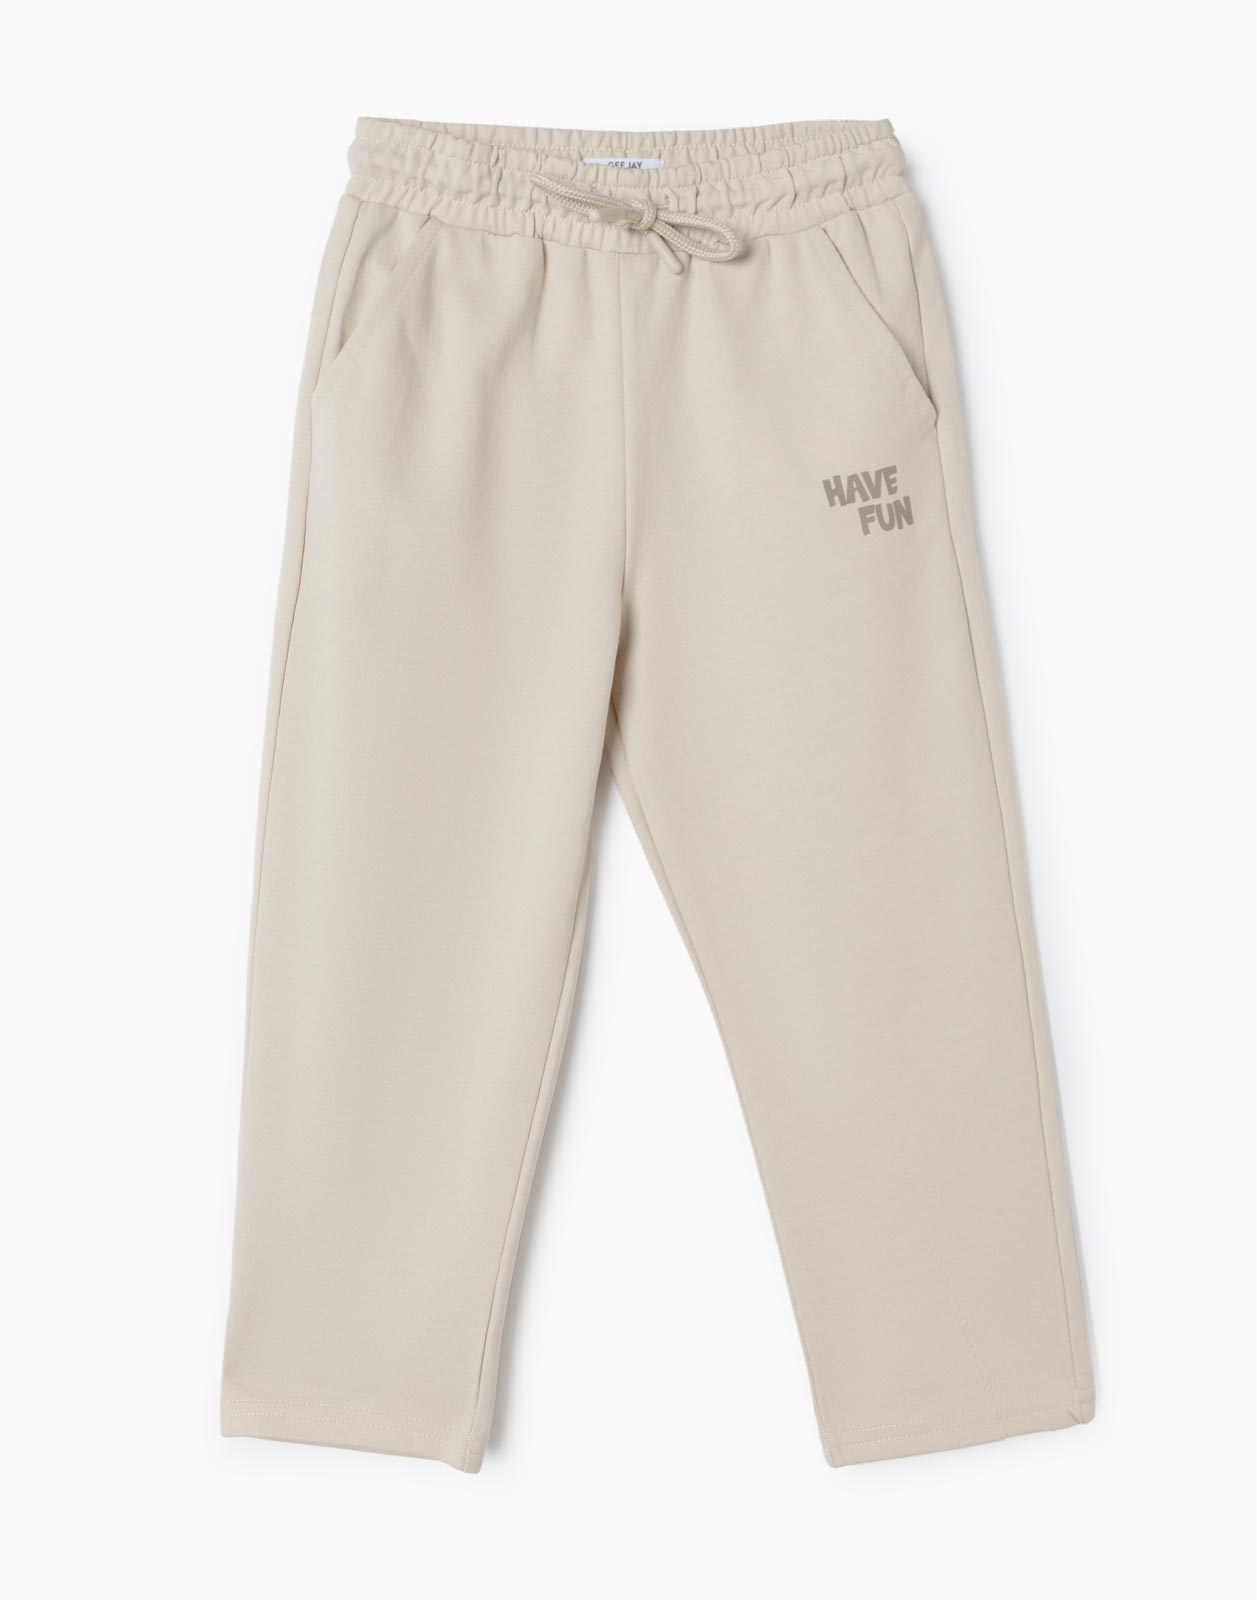 Бежевые спортивные брюки Comfort с надписью Have Fun для мальчика р.92